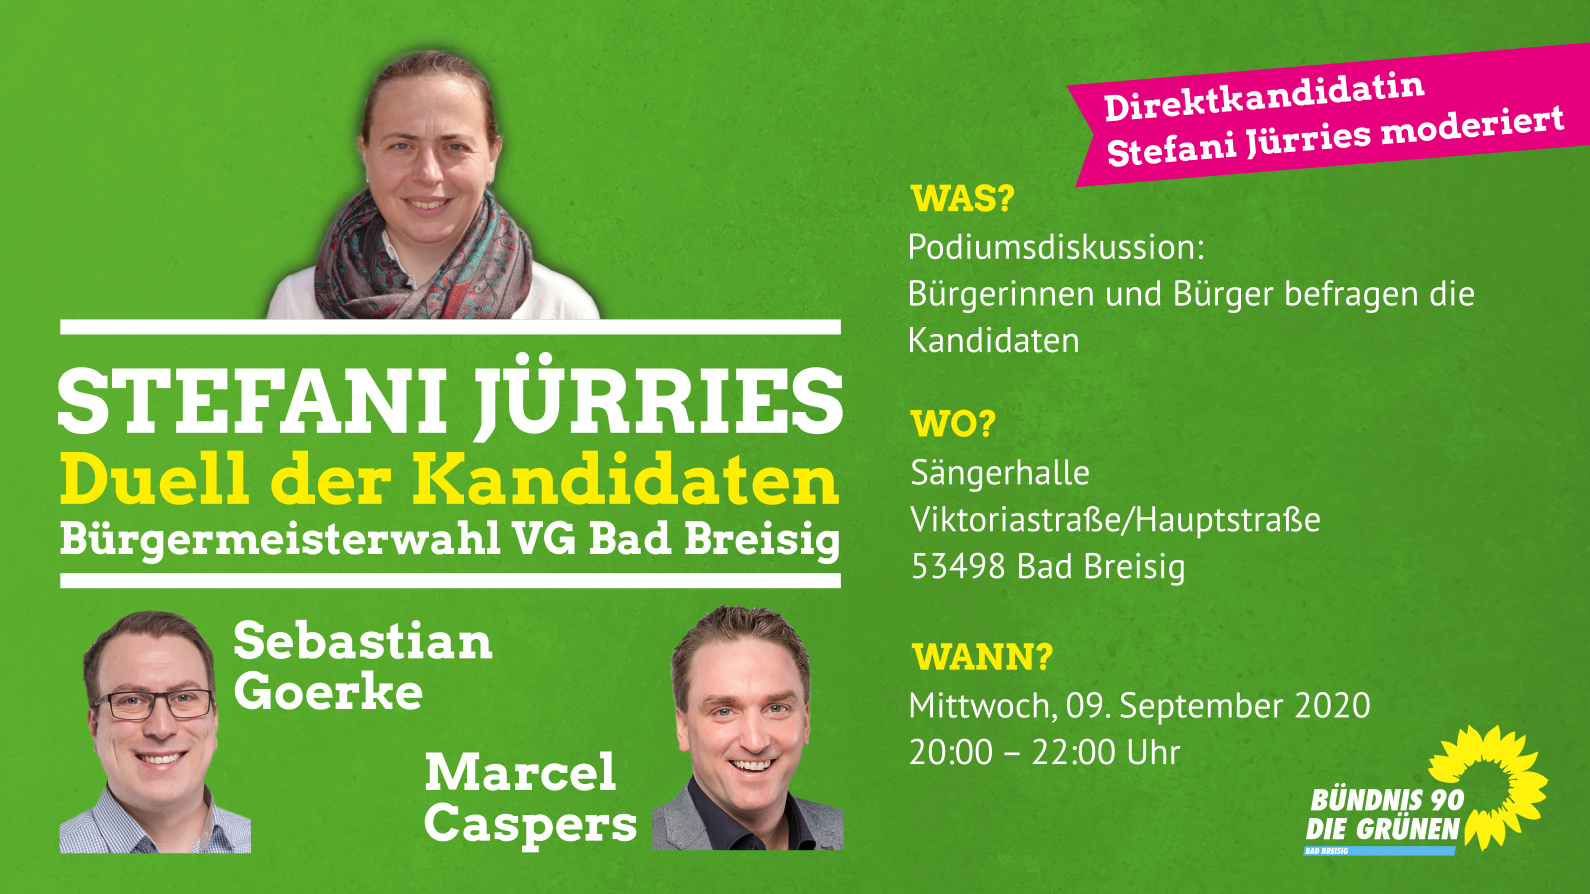 Duell der Kandidaten für das Amt der Bürgermeisters der VG Bad Breisig